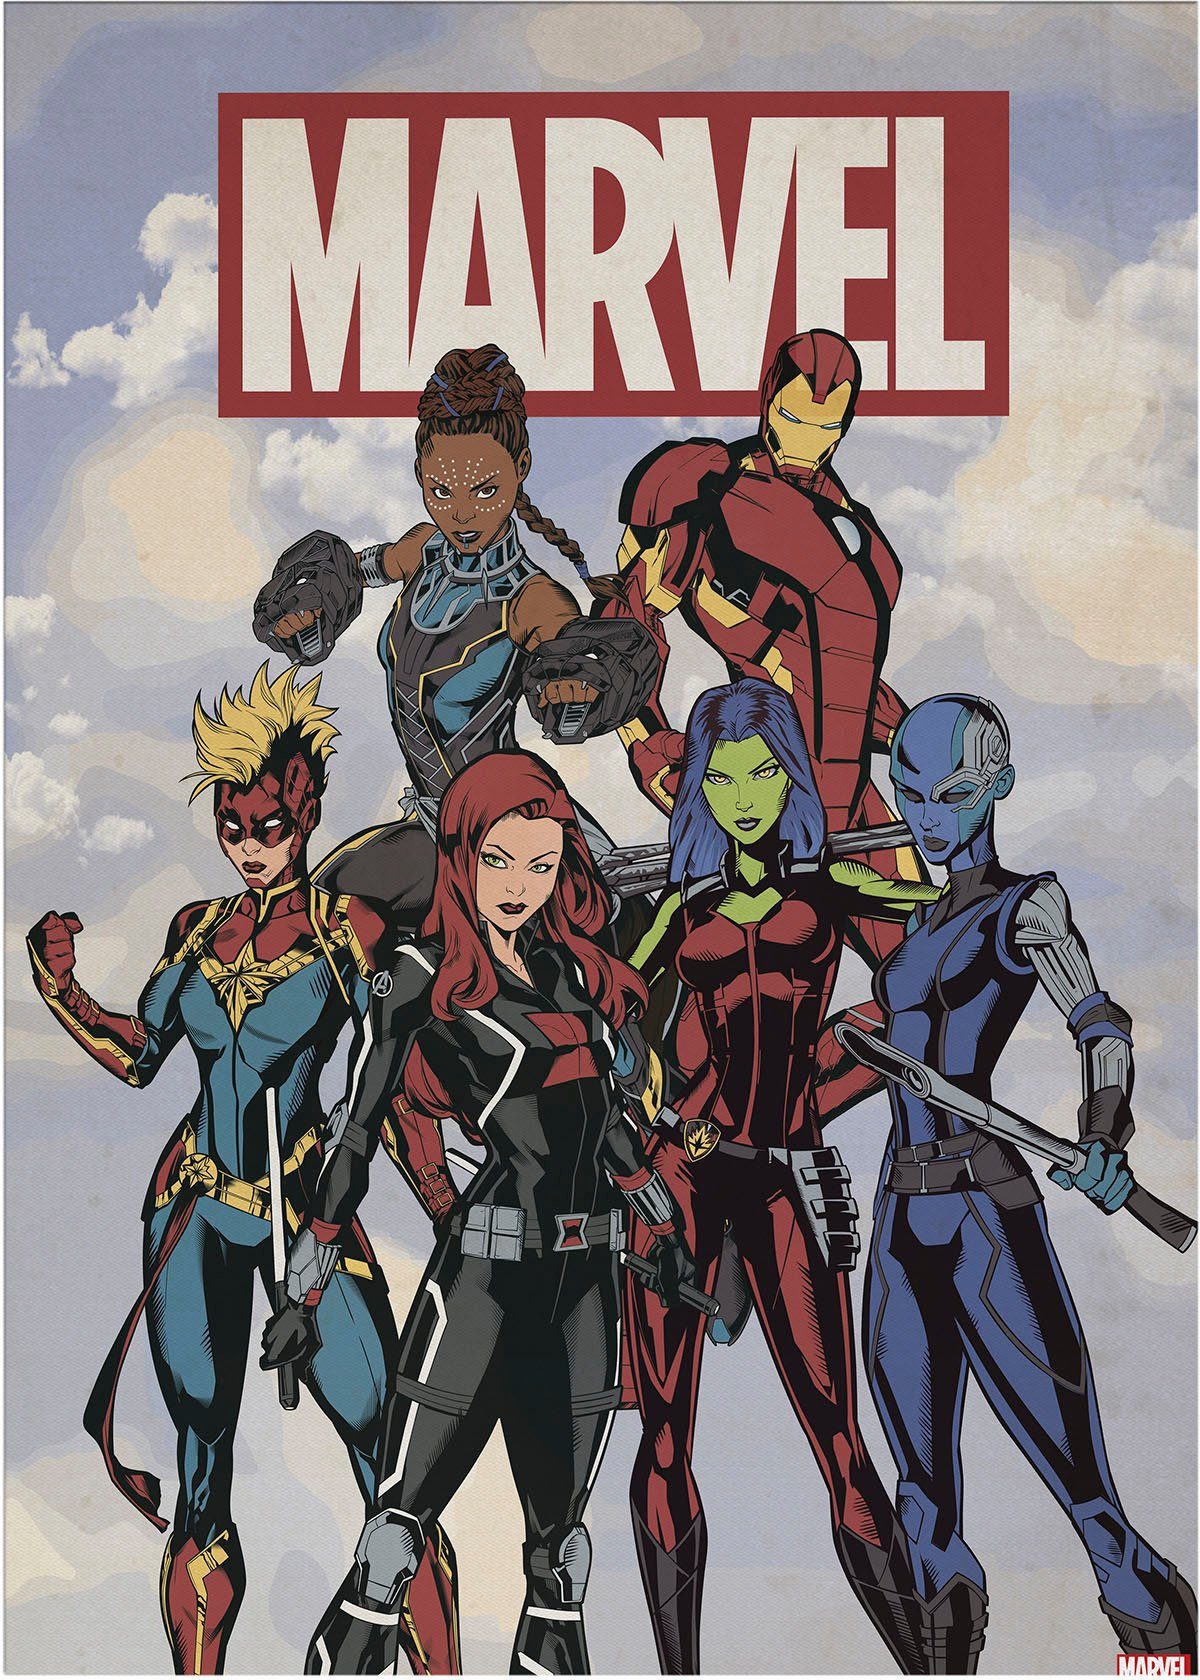 St) (1 MARVEL Leinwandbild Marvel group, Avengers